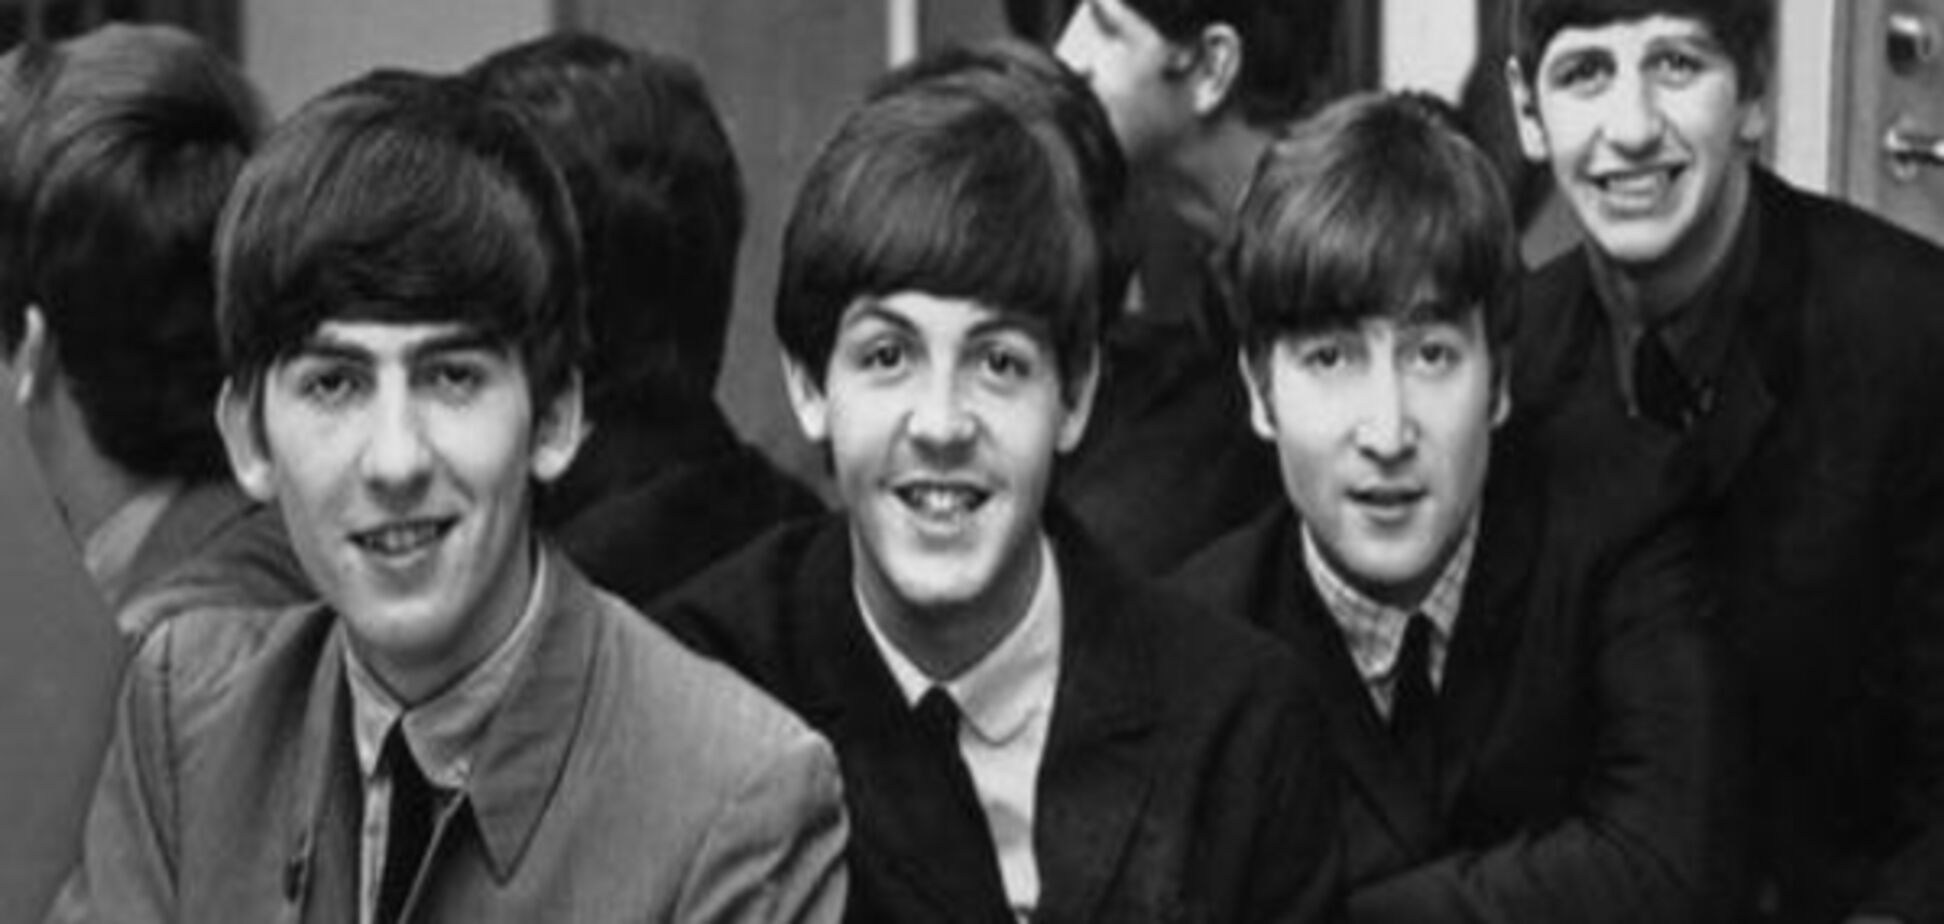 Маккартні хоче відсудити у Sony/ATV права на пісні Beatles